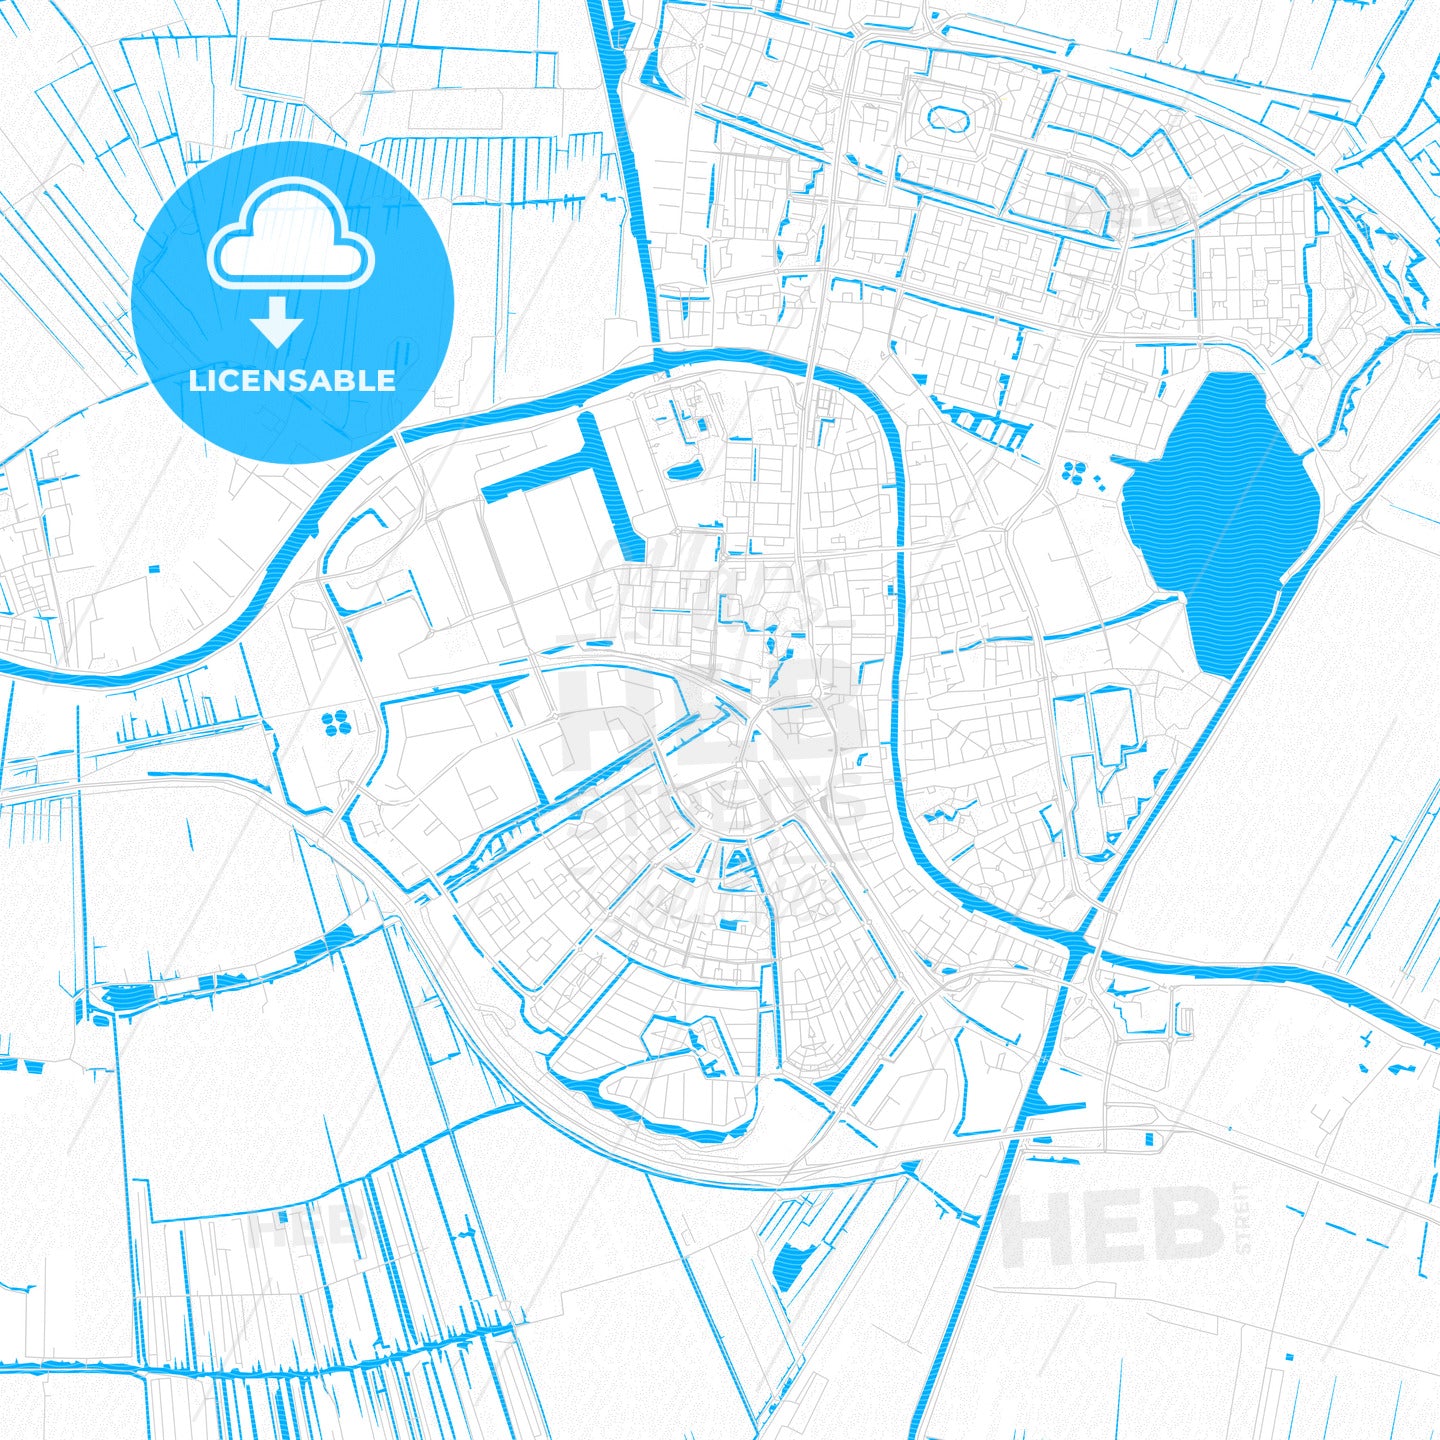 Alphen aan den Rijn, Netherlands PDF vector map with water in focus